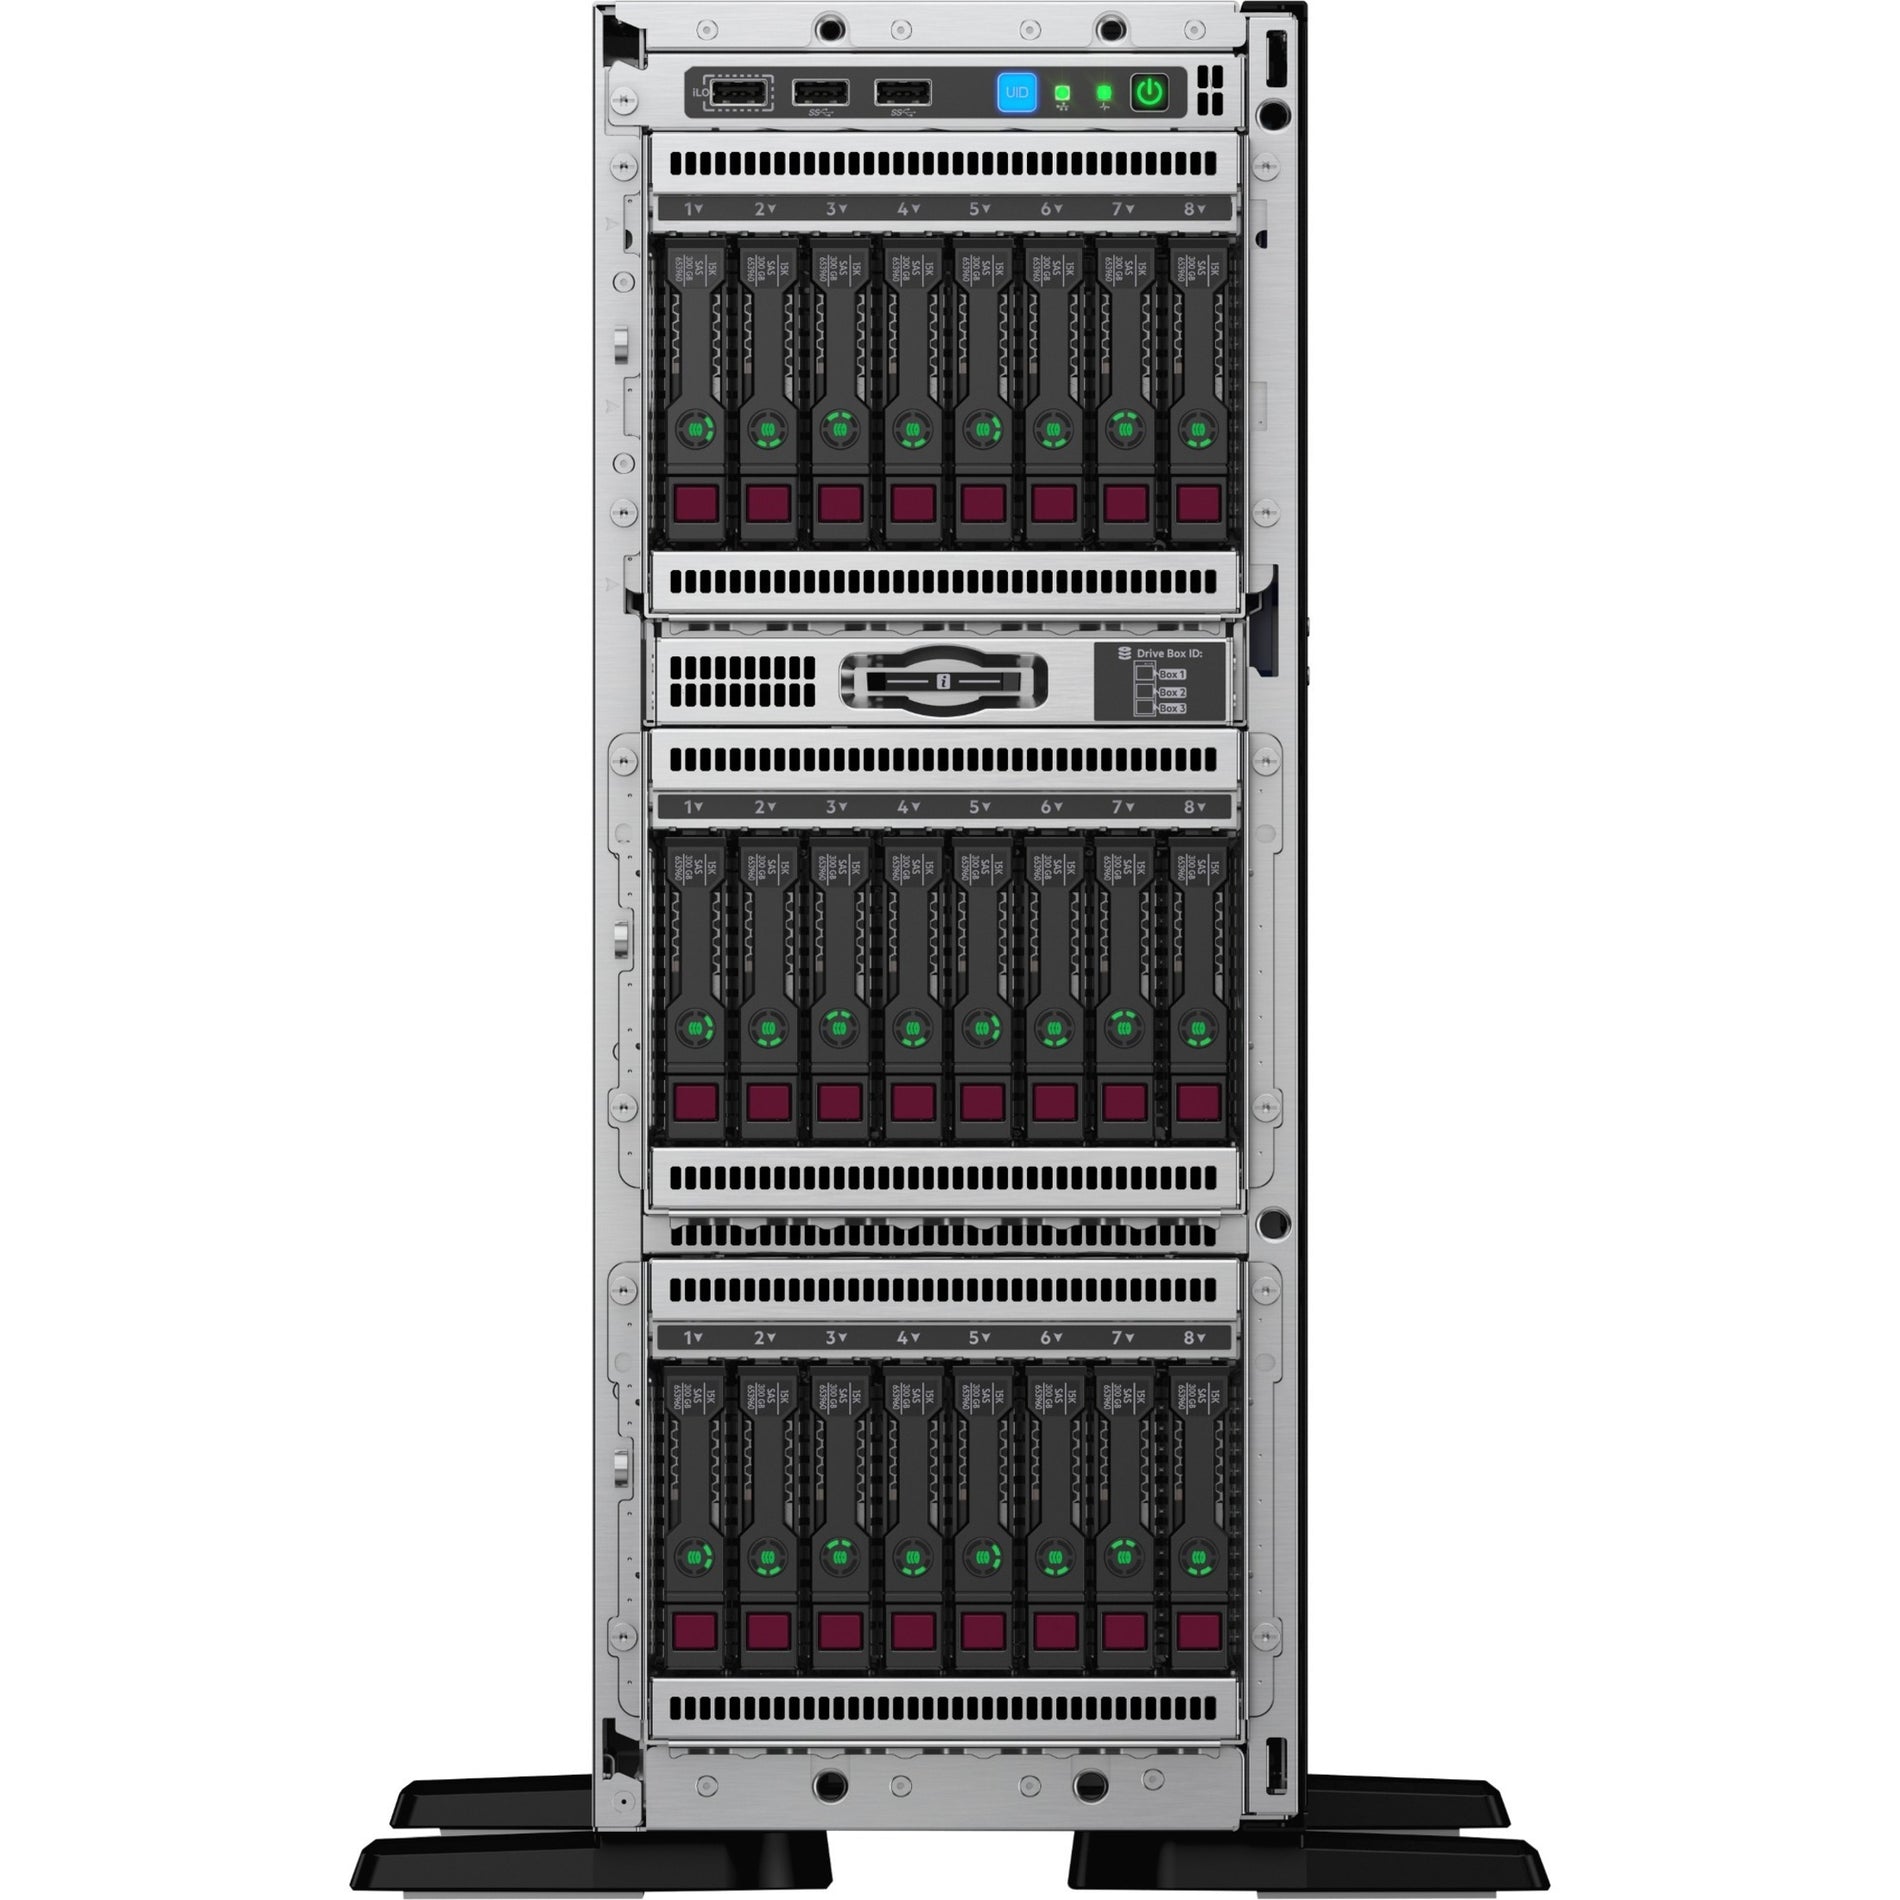 HPE P21789-001 ProLiant ML350 G10 Server, Intel Xeon Silver 4214R, 32GB RAM, 4U Tower